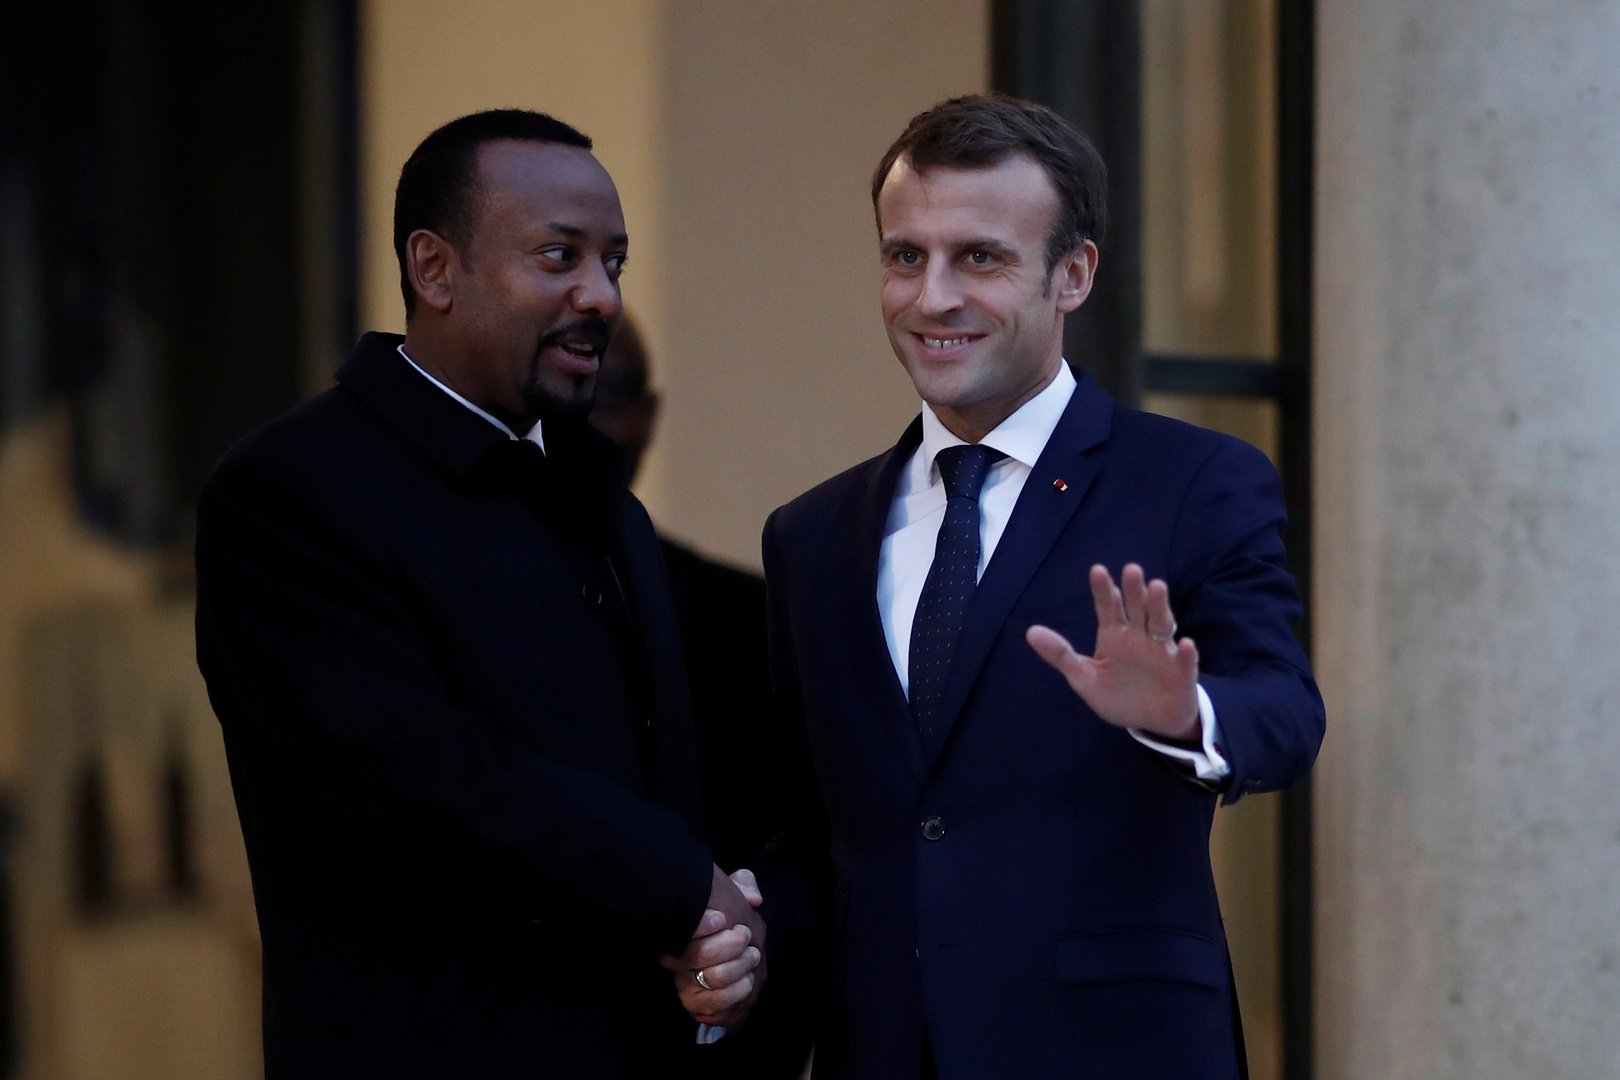 مجلة فرنسية: إثيوبيا طلبت من باريس تزويدها بمقاتلات رافال وصواريخ قادرة على حمل رؤوس نووية